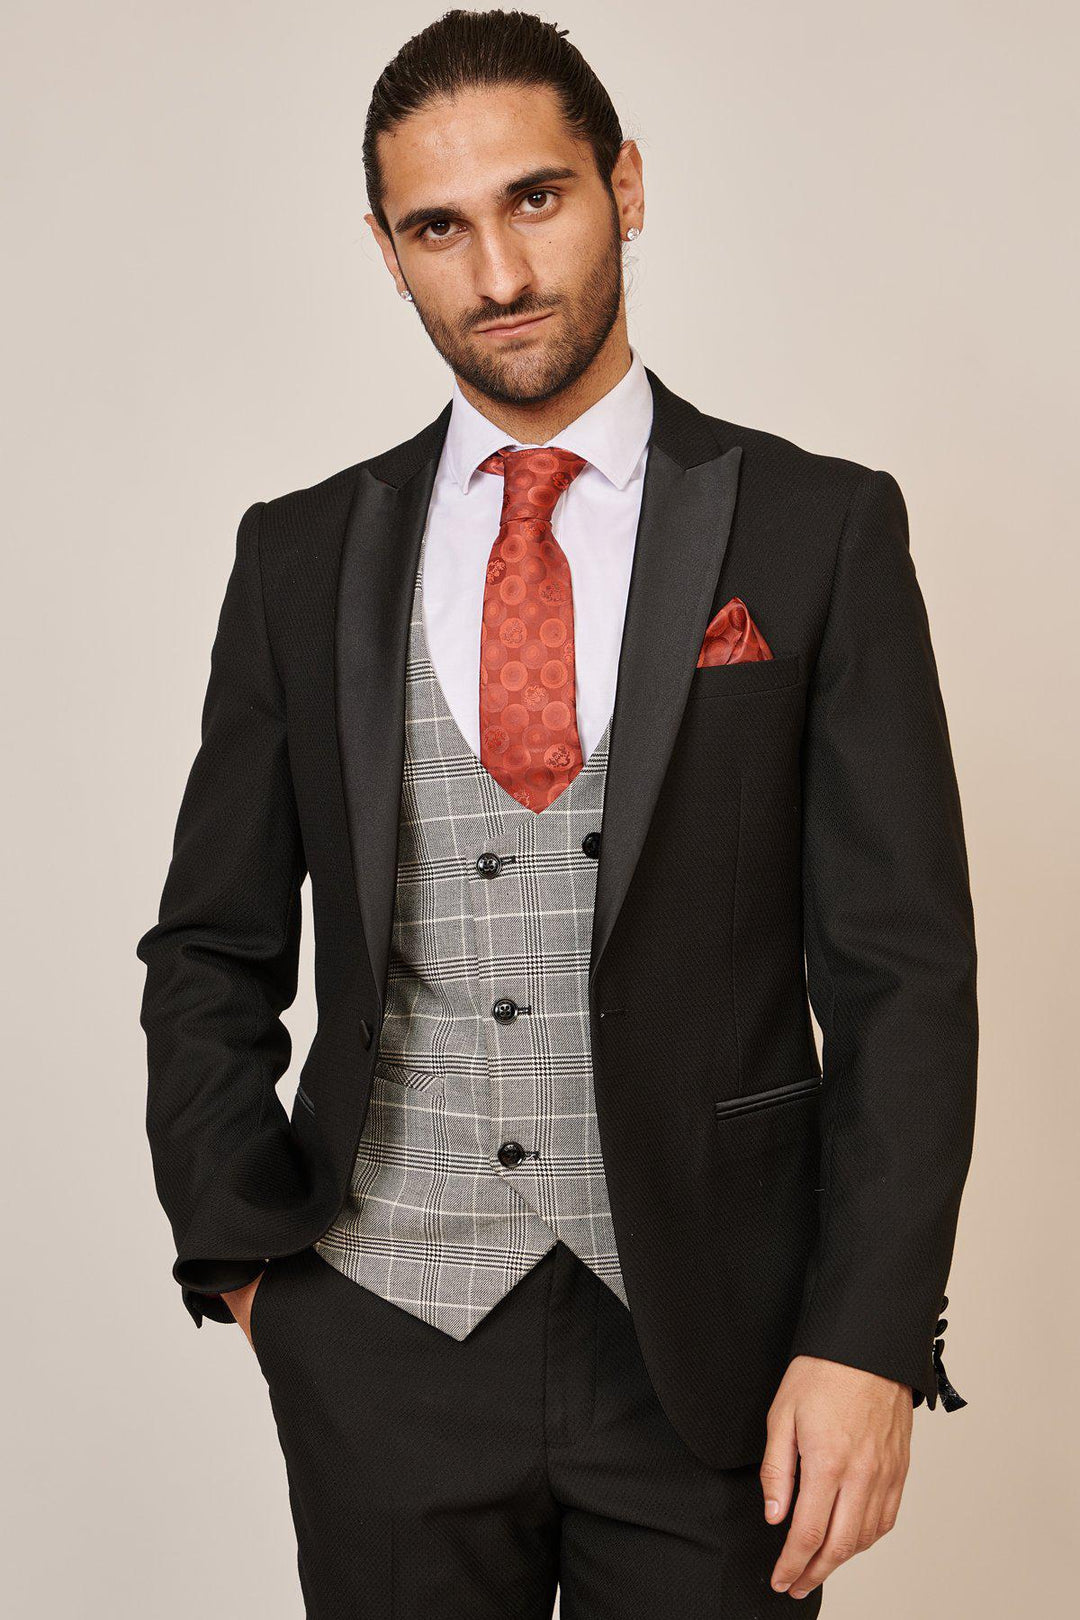 DALTON - Black Tux Lapel Suit With Ross Waistcoat